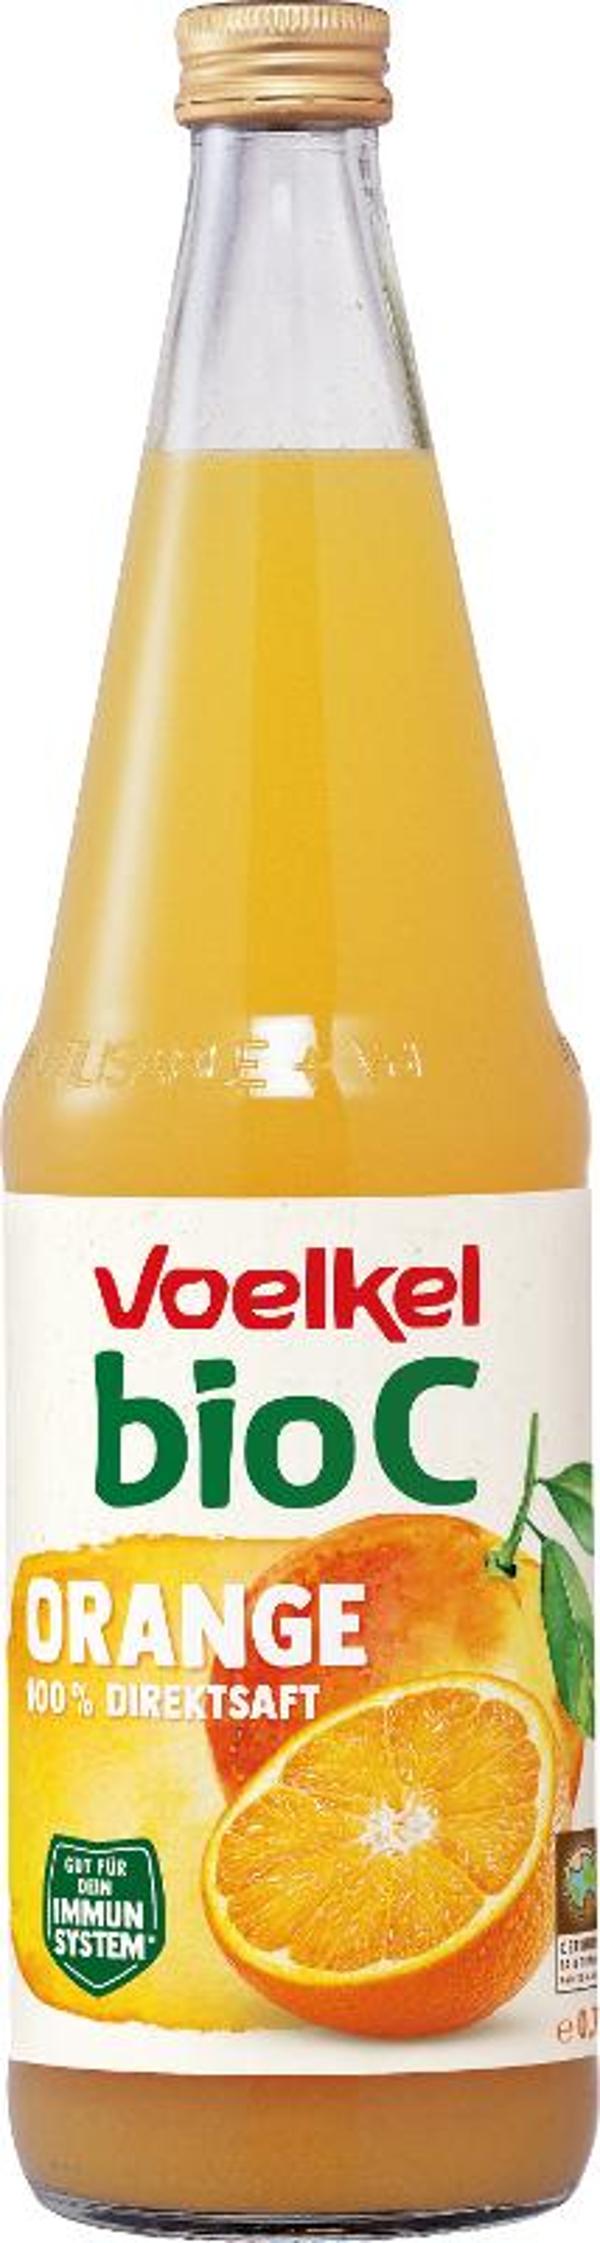 Produktfoto zu Bio-C Orangensaft 0,7l Flasche